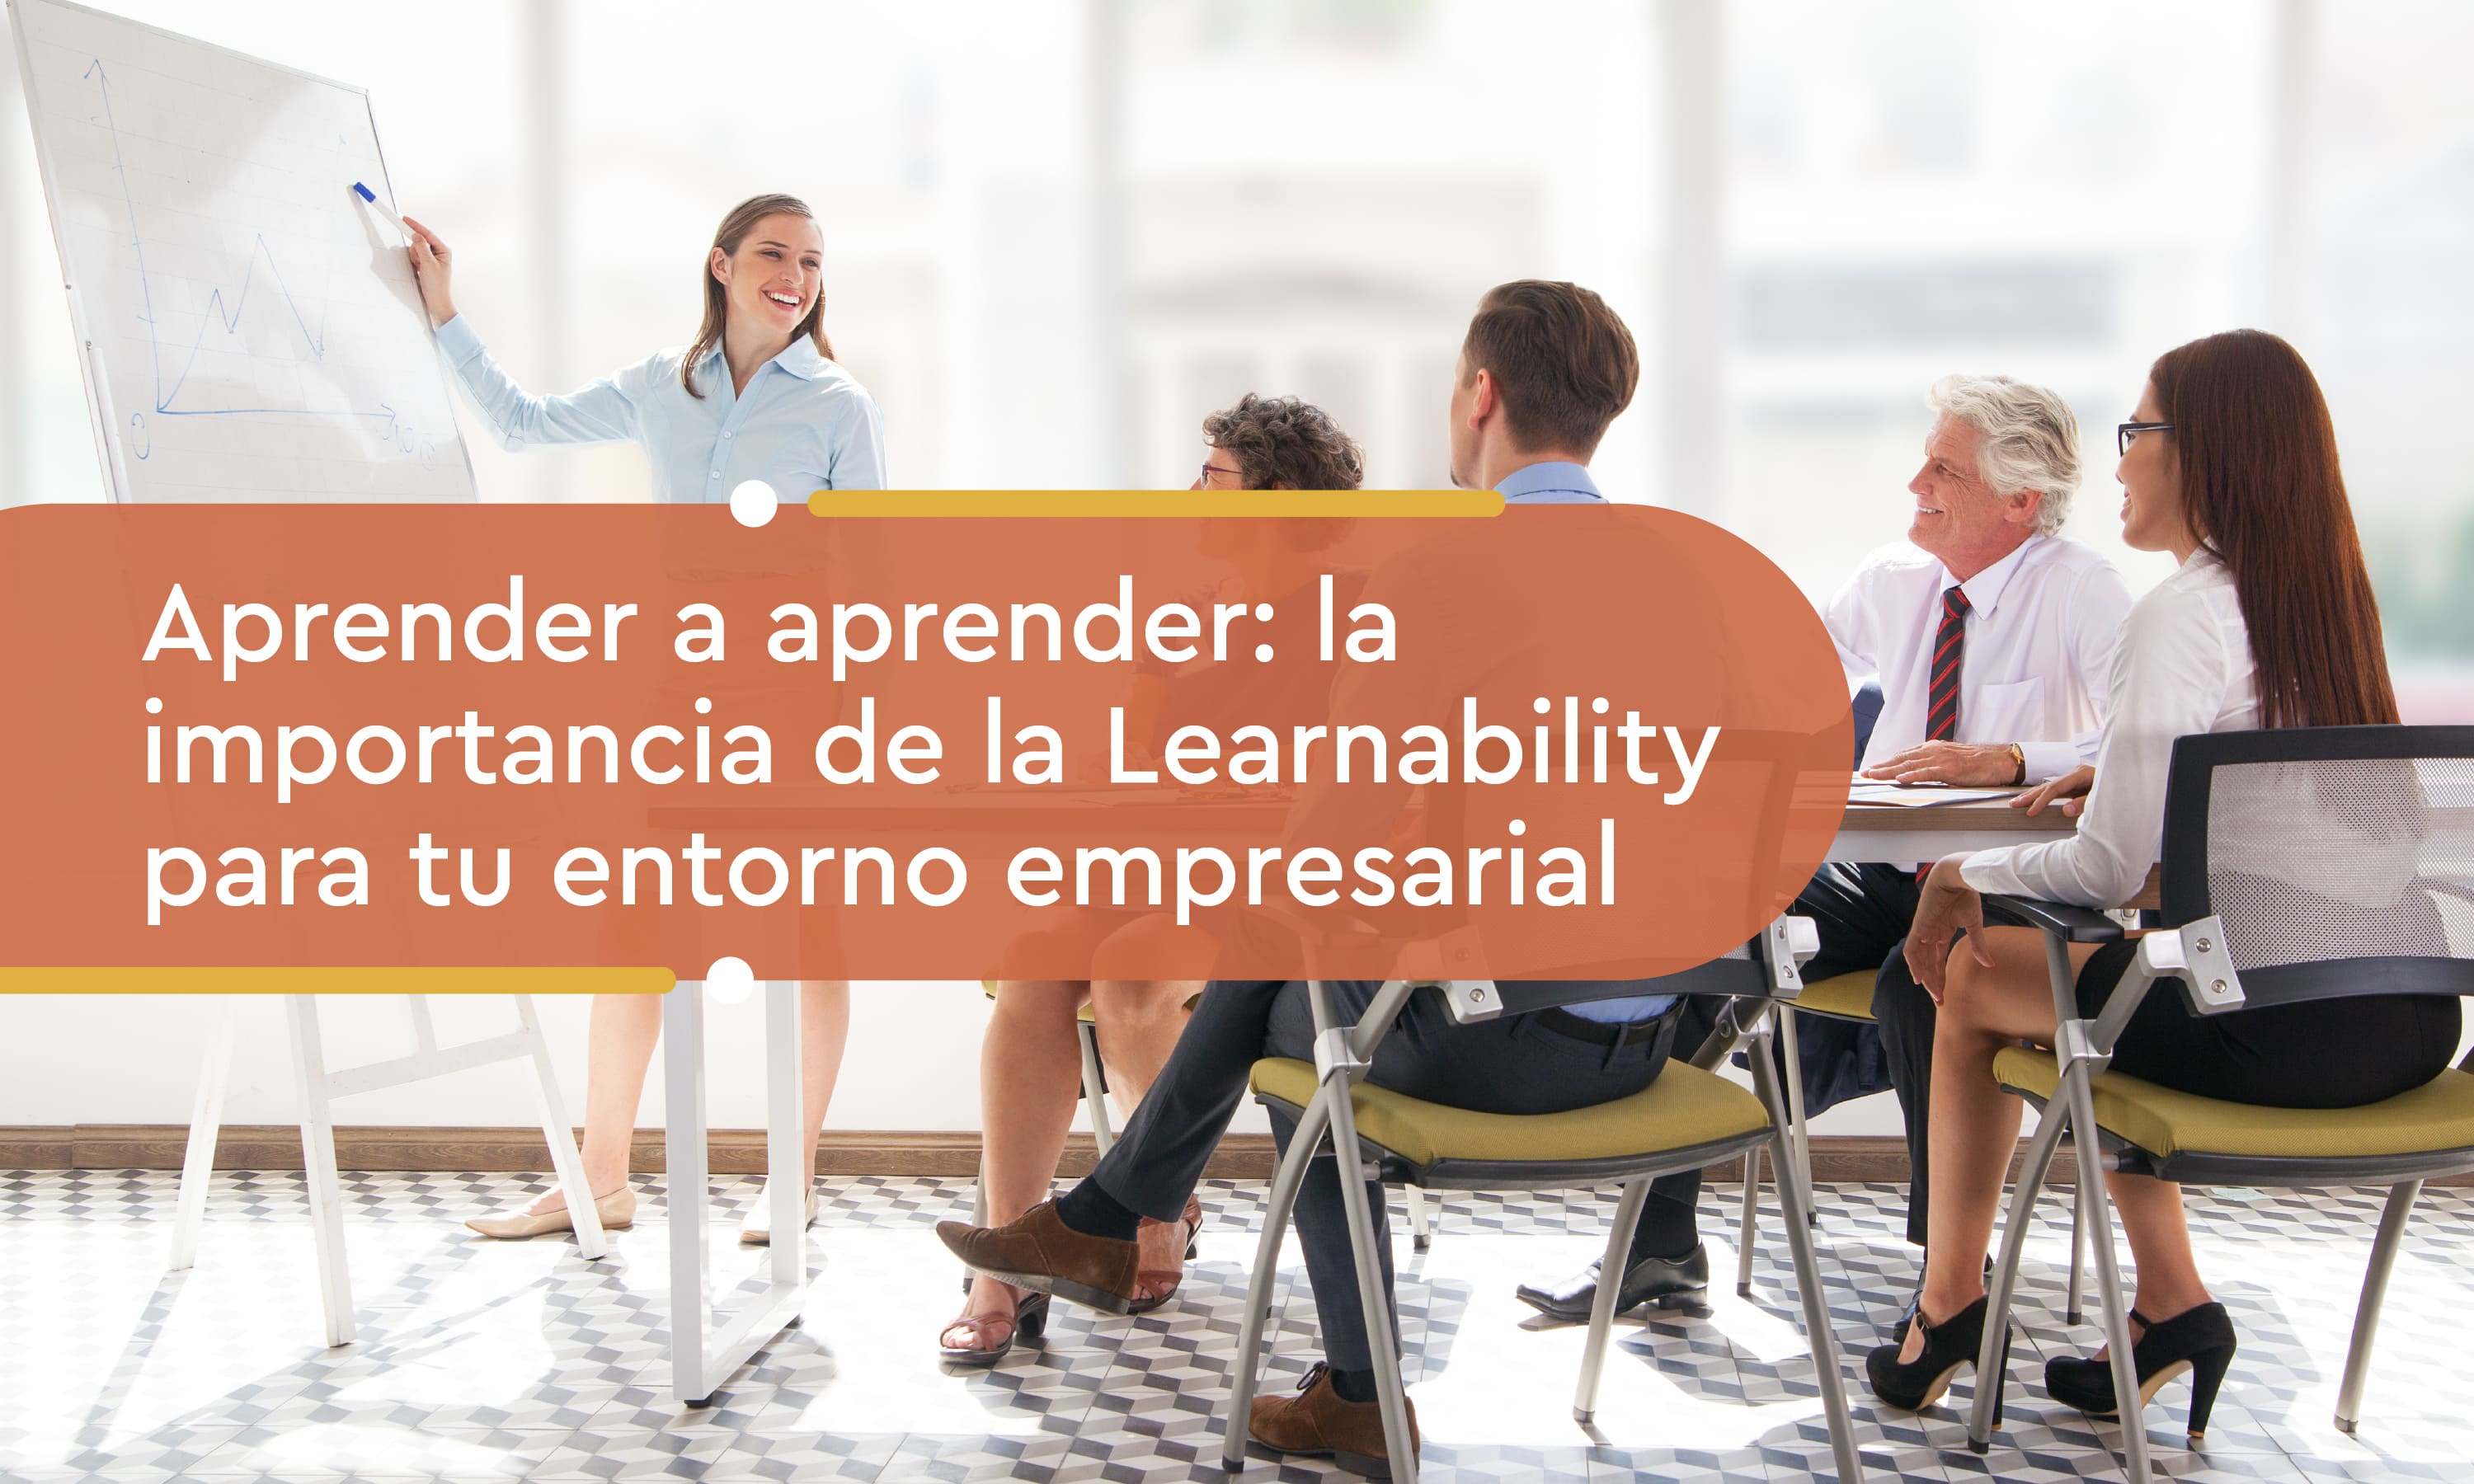 Aprender a aprender: la importancia de la Learnability para tu entorno empresarial